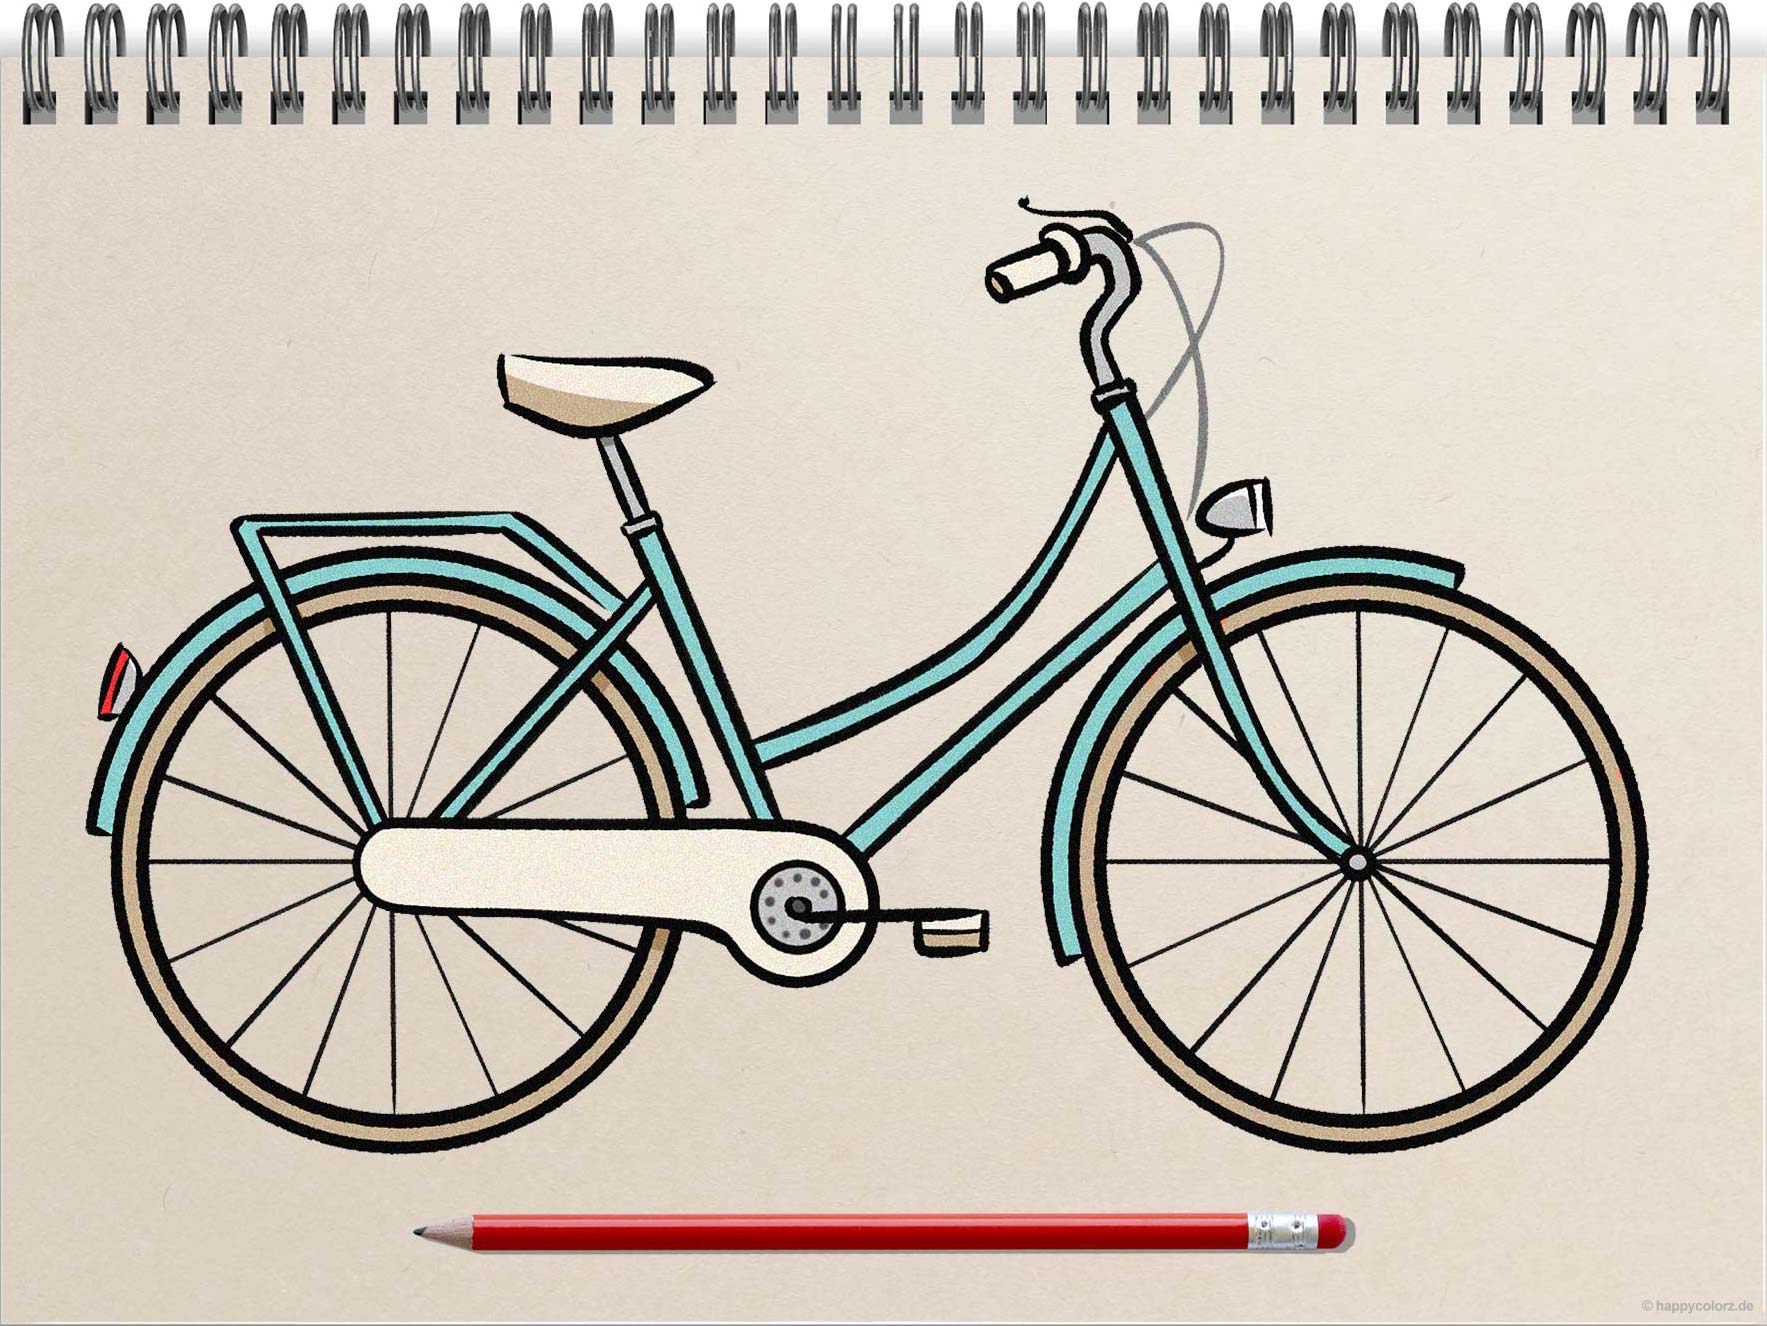 Fahrrad zeichnen - Schritt-für-Schritt Anleitung mit Vorlagen